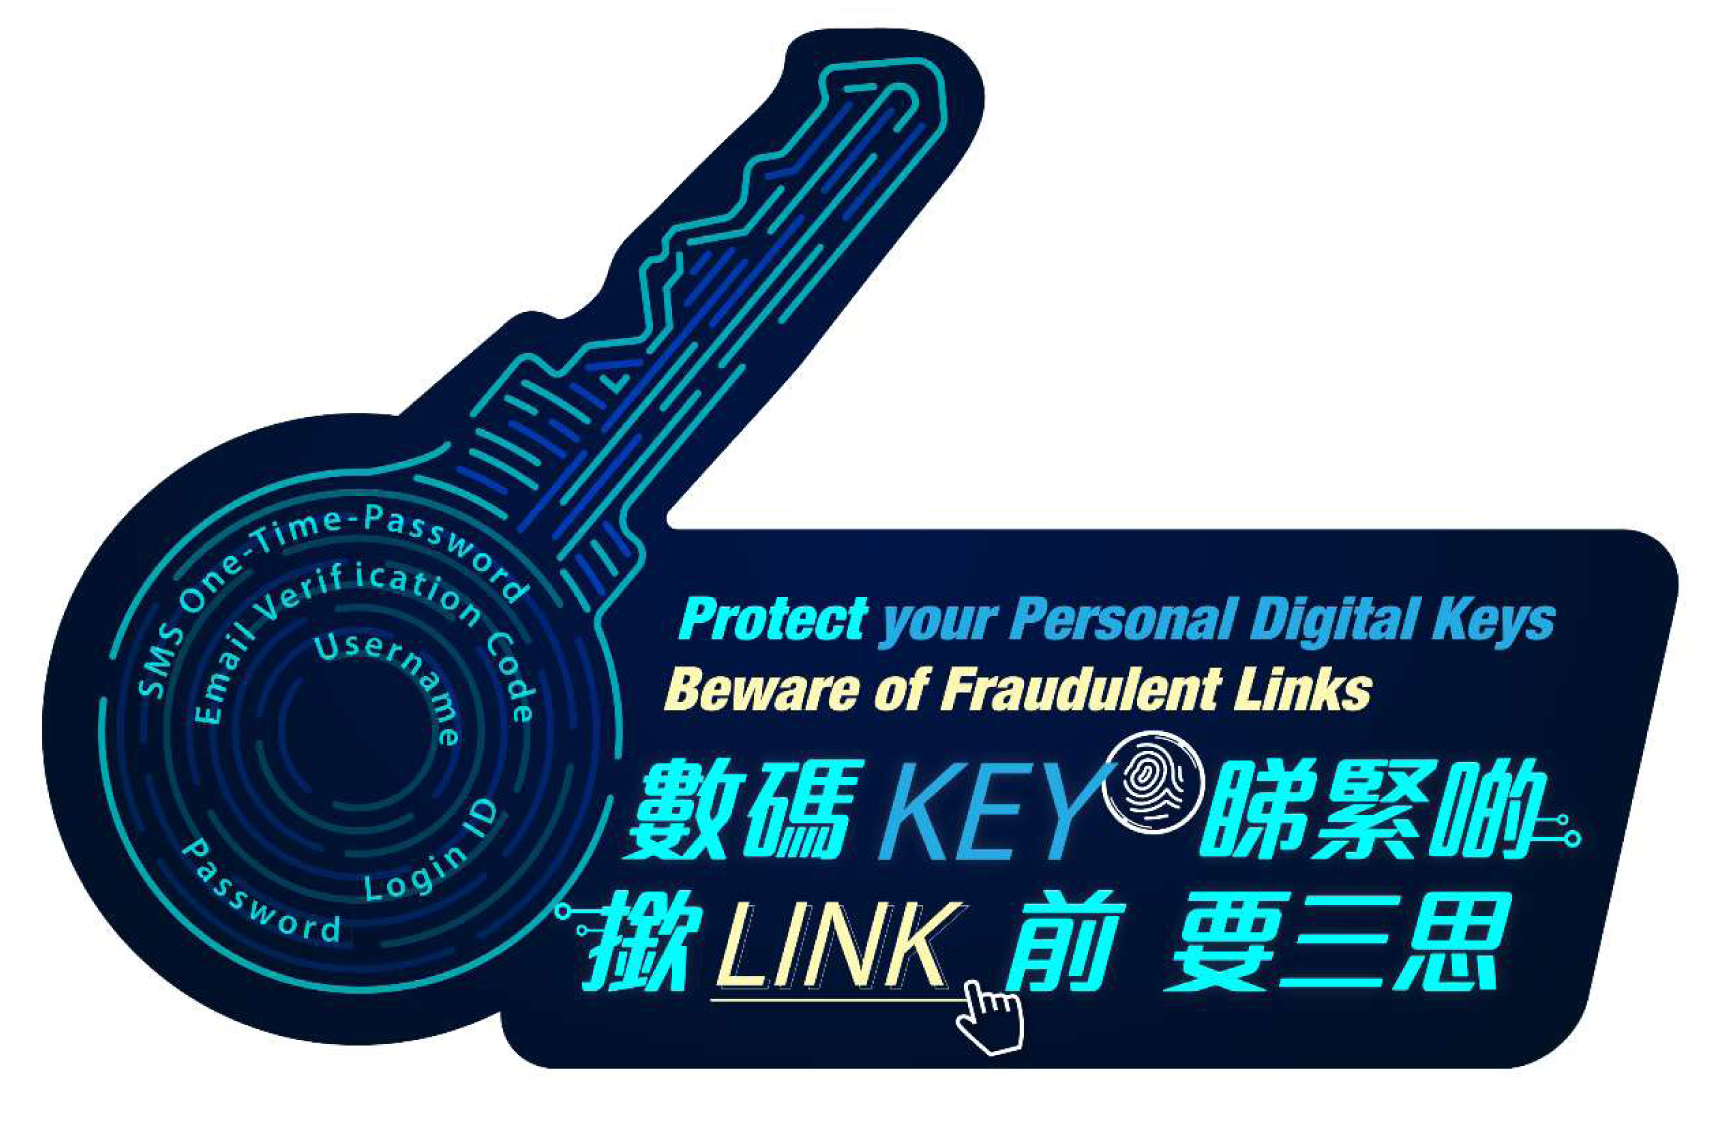 Protect your Personal Digital Keys, Beware of Fraudulent Links!